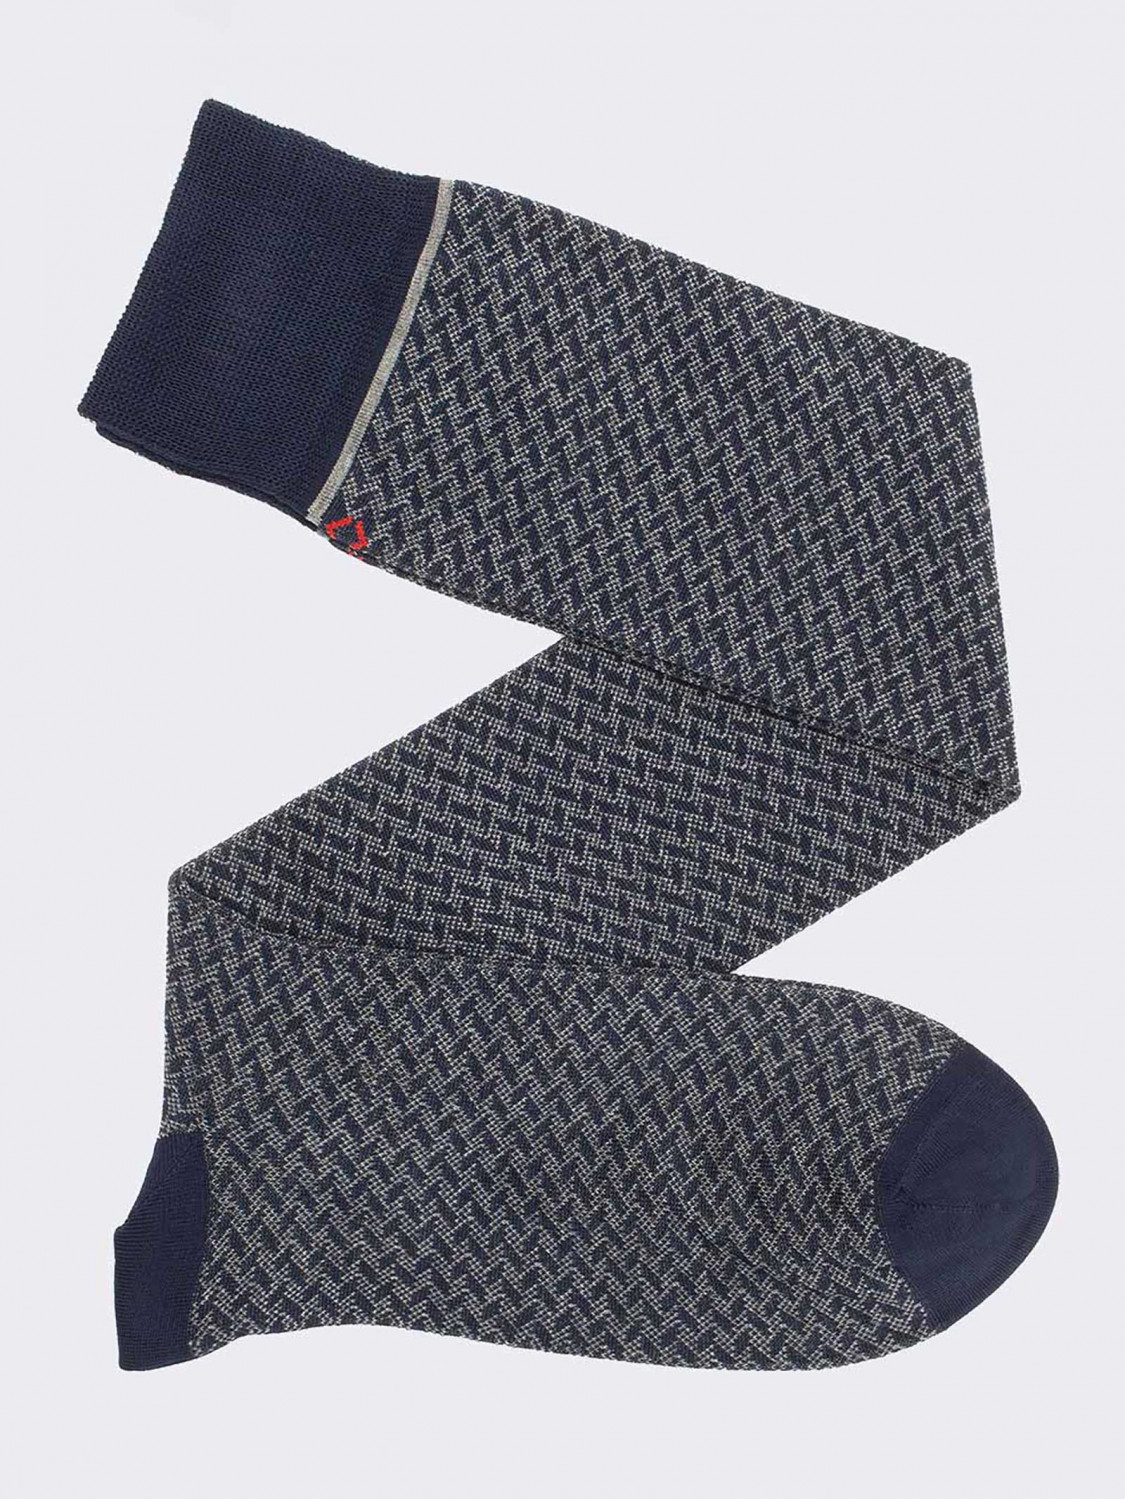 Knee - high  socks for men in Fresh Cotton - geometric pattern